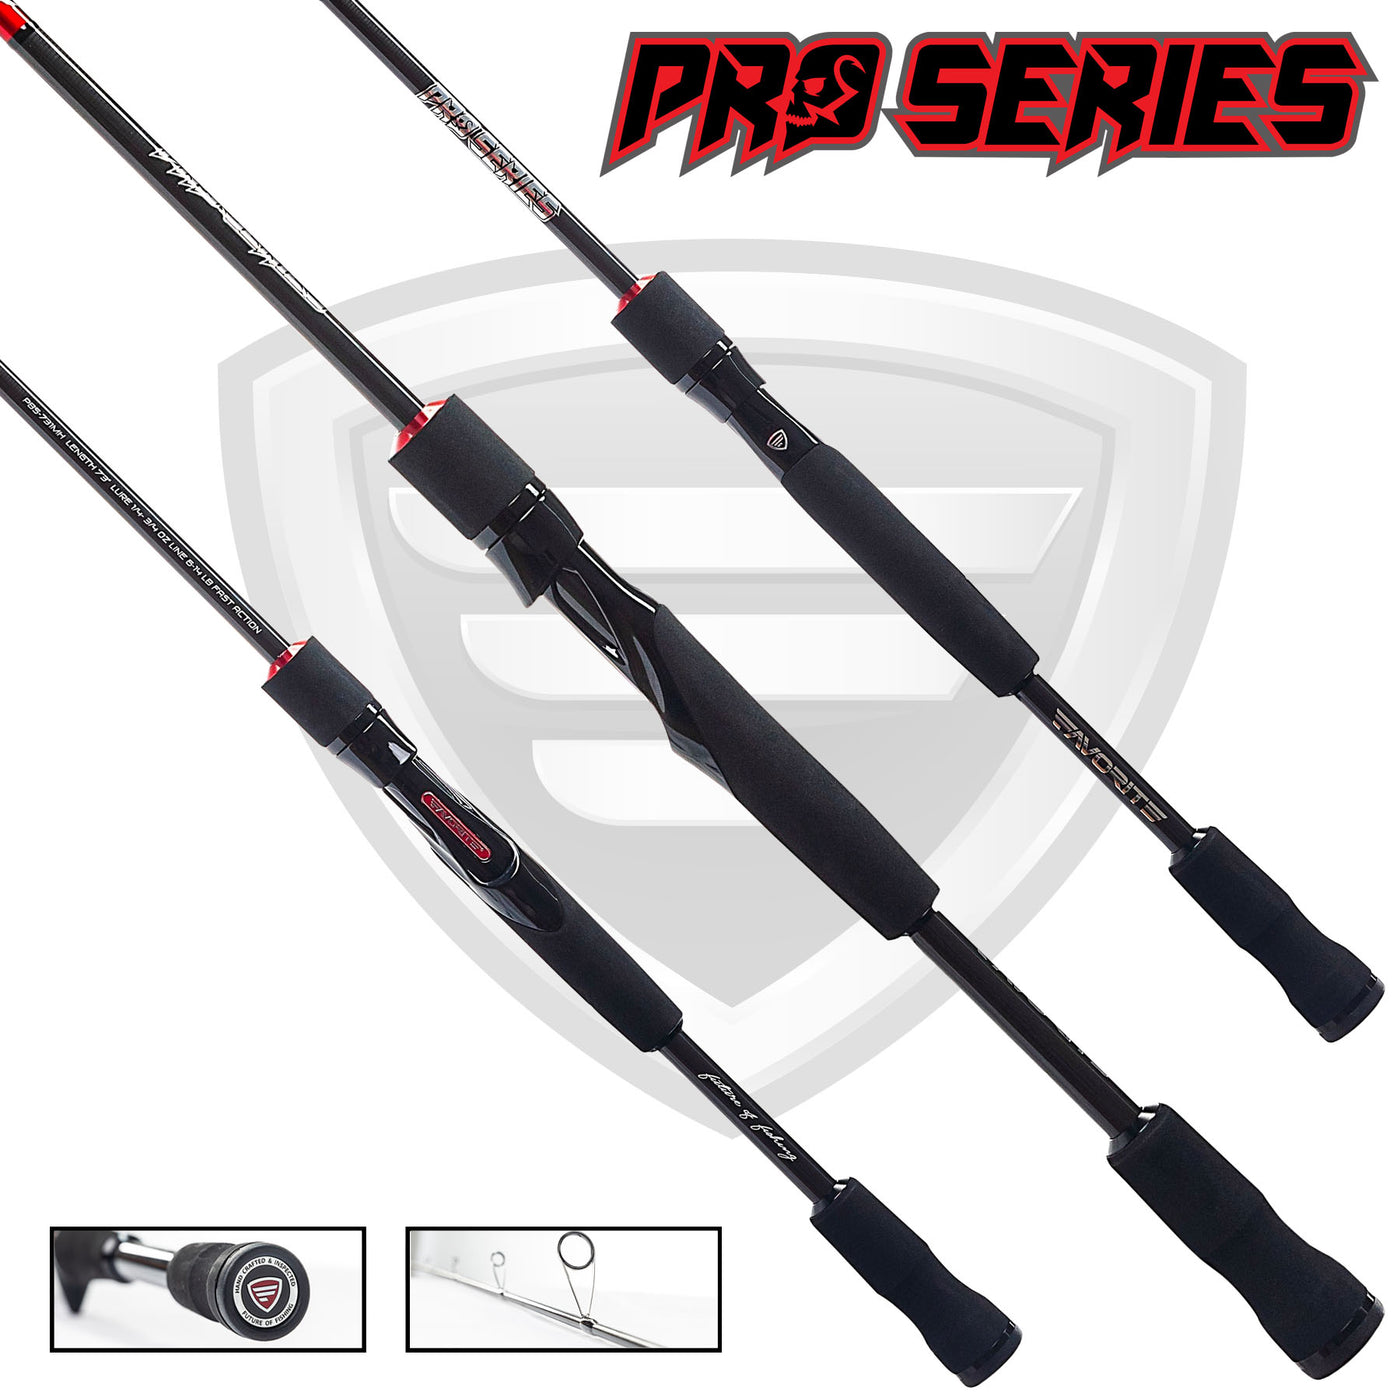 Pro Series Spinning Rod Favorite Fishing